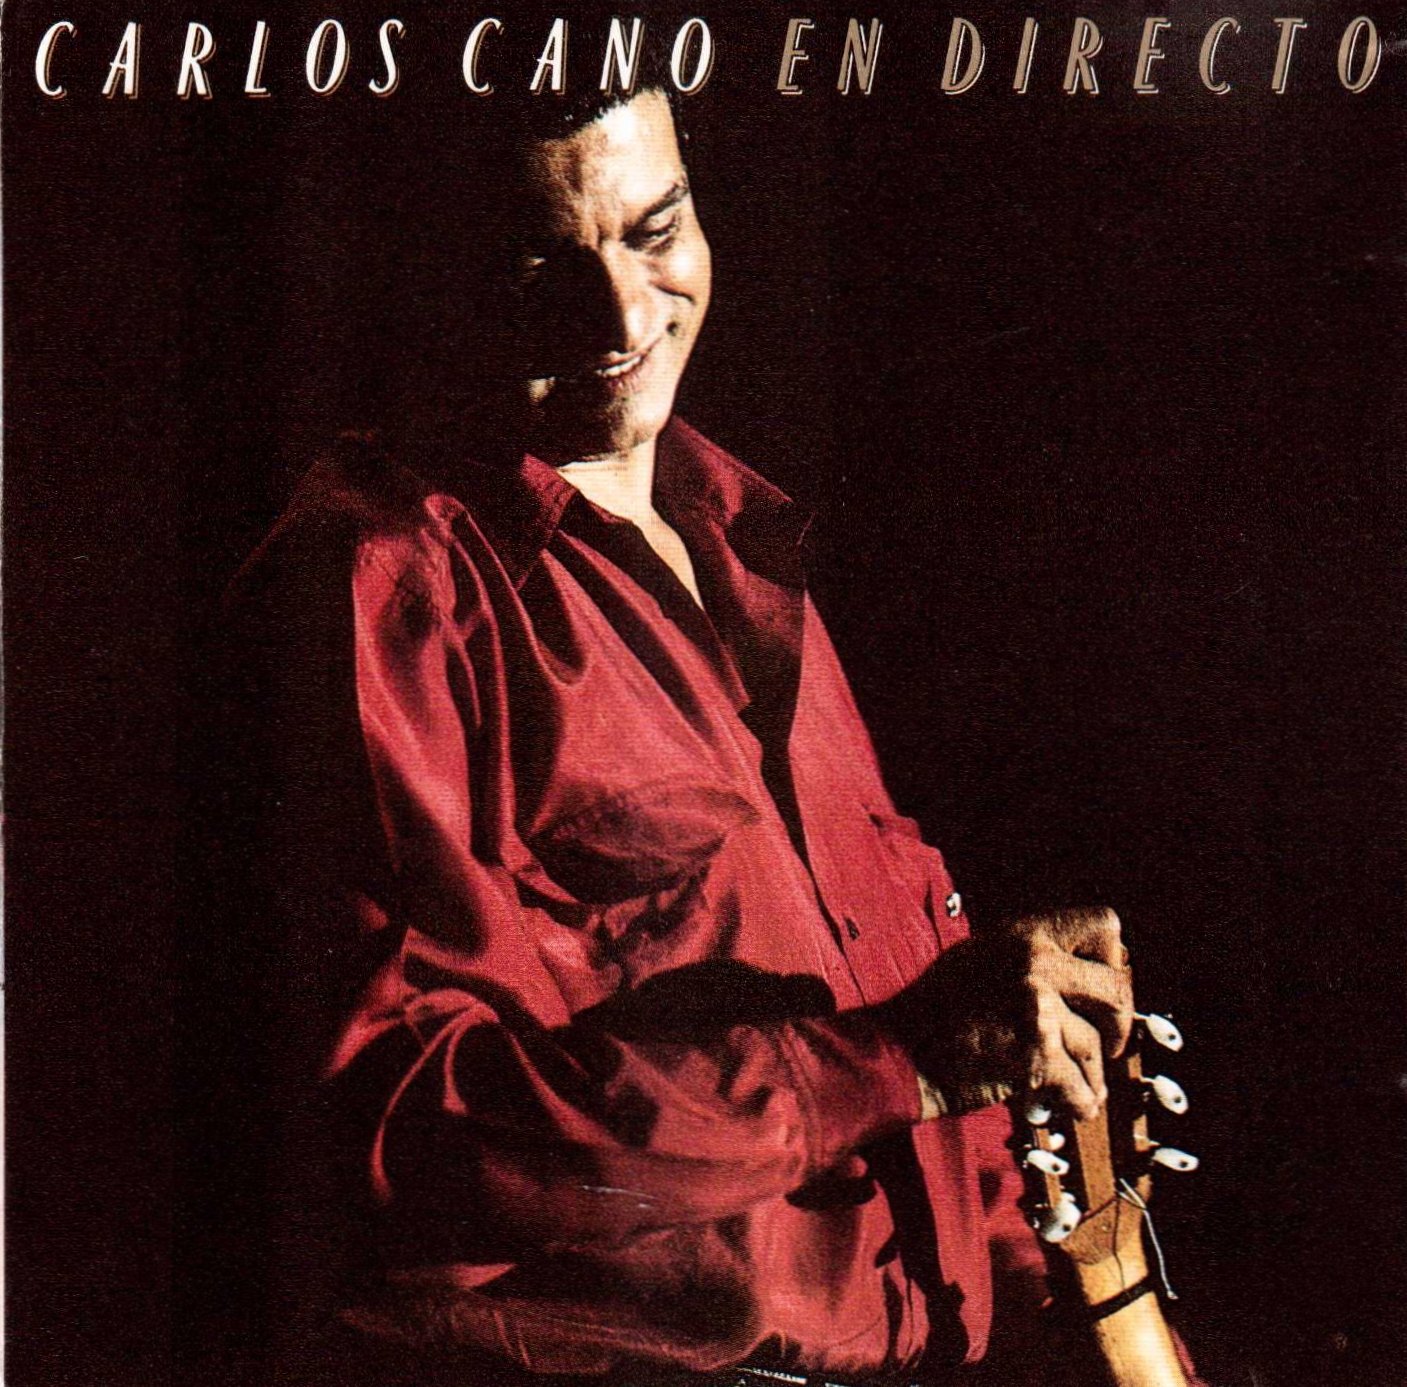 Carlos Cano - En Directo (1990) FLAC Download